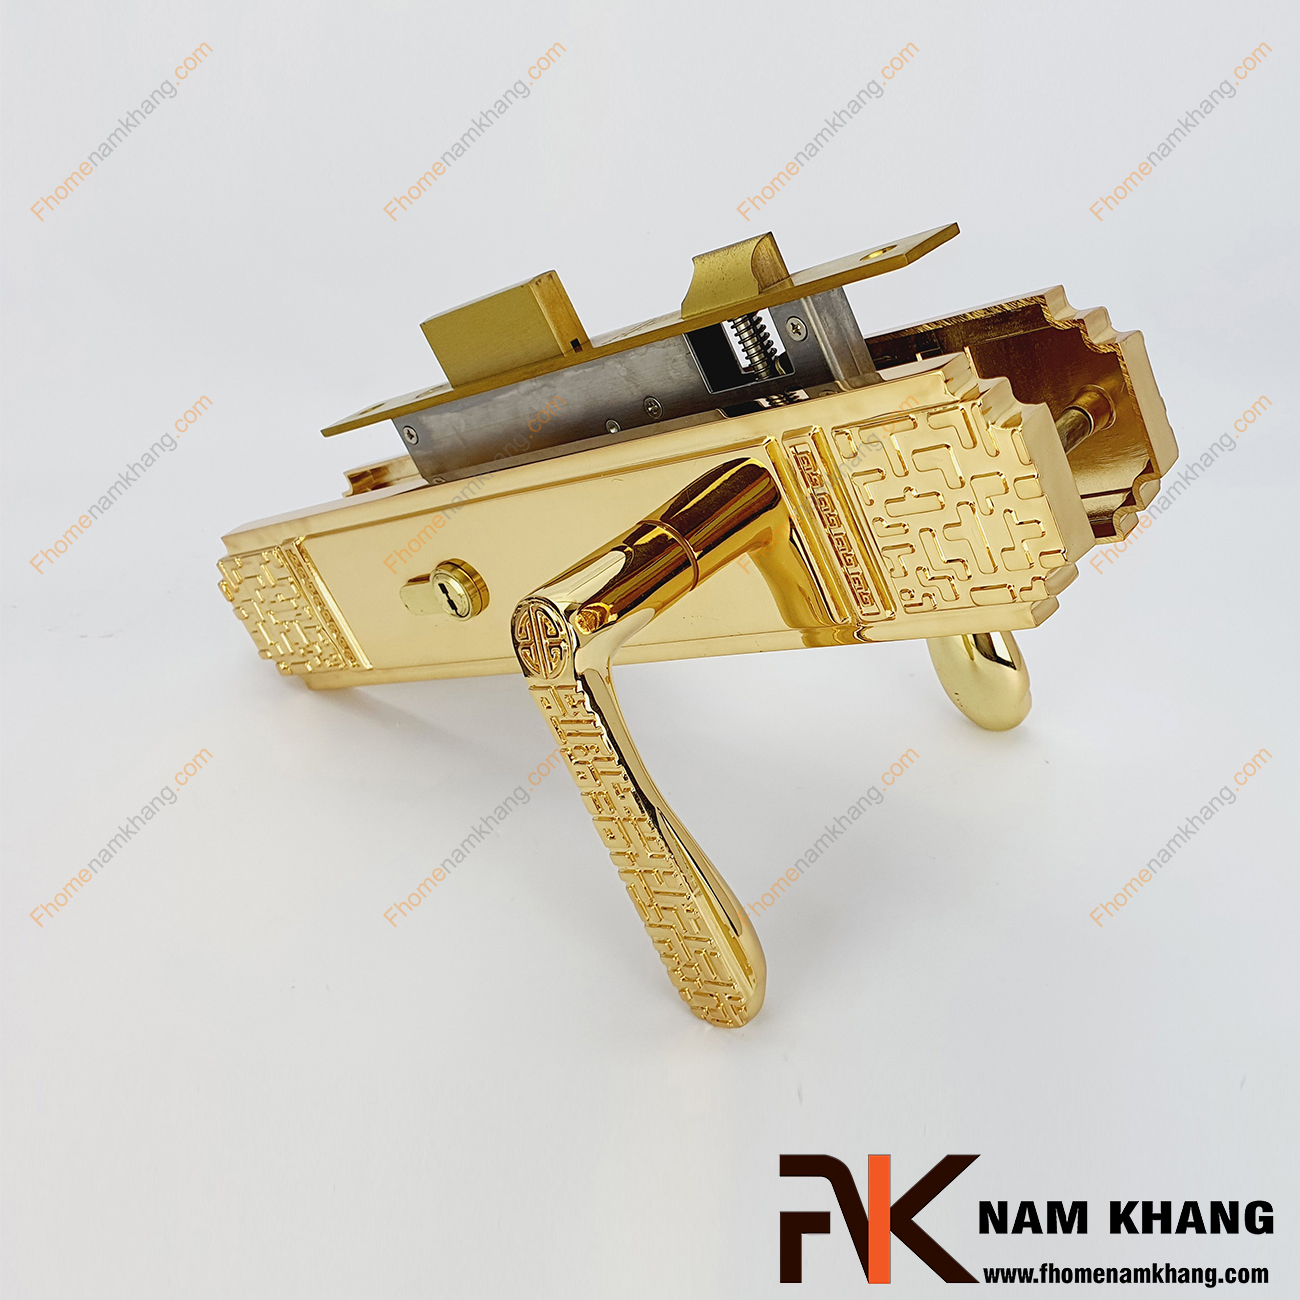 Khóa cửa chính bằng đồng màu vàng NK344L-24K là bộ sản phẩm khóa cửa loại lớn chuyên dùng cho các dạng cửa chính size đại, cao cấp, cửa 2 cánh, 4 cánh,...